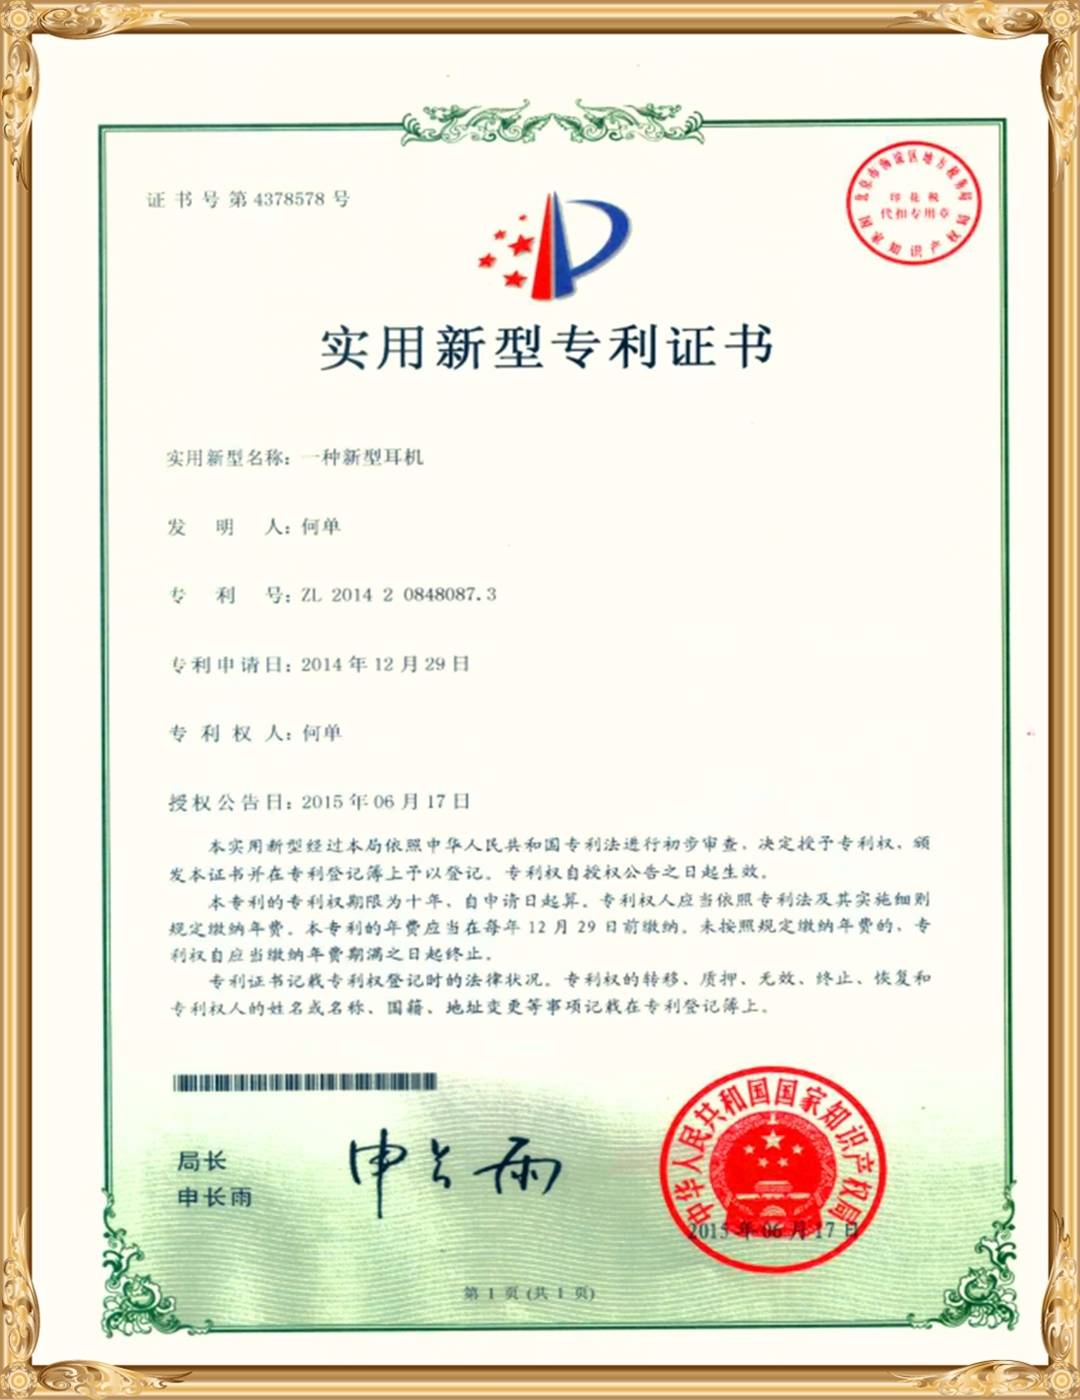 Visualització del certificat